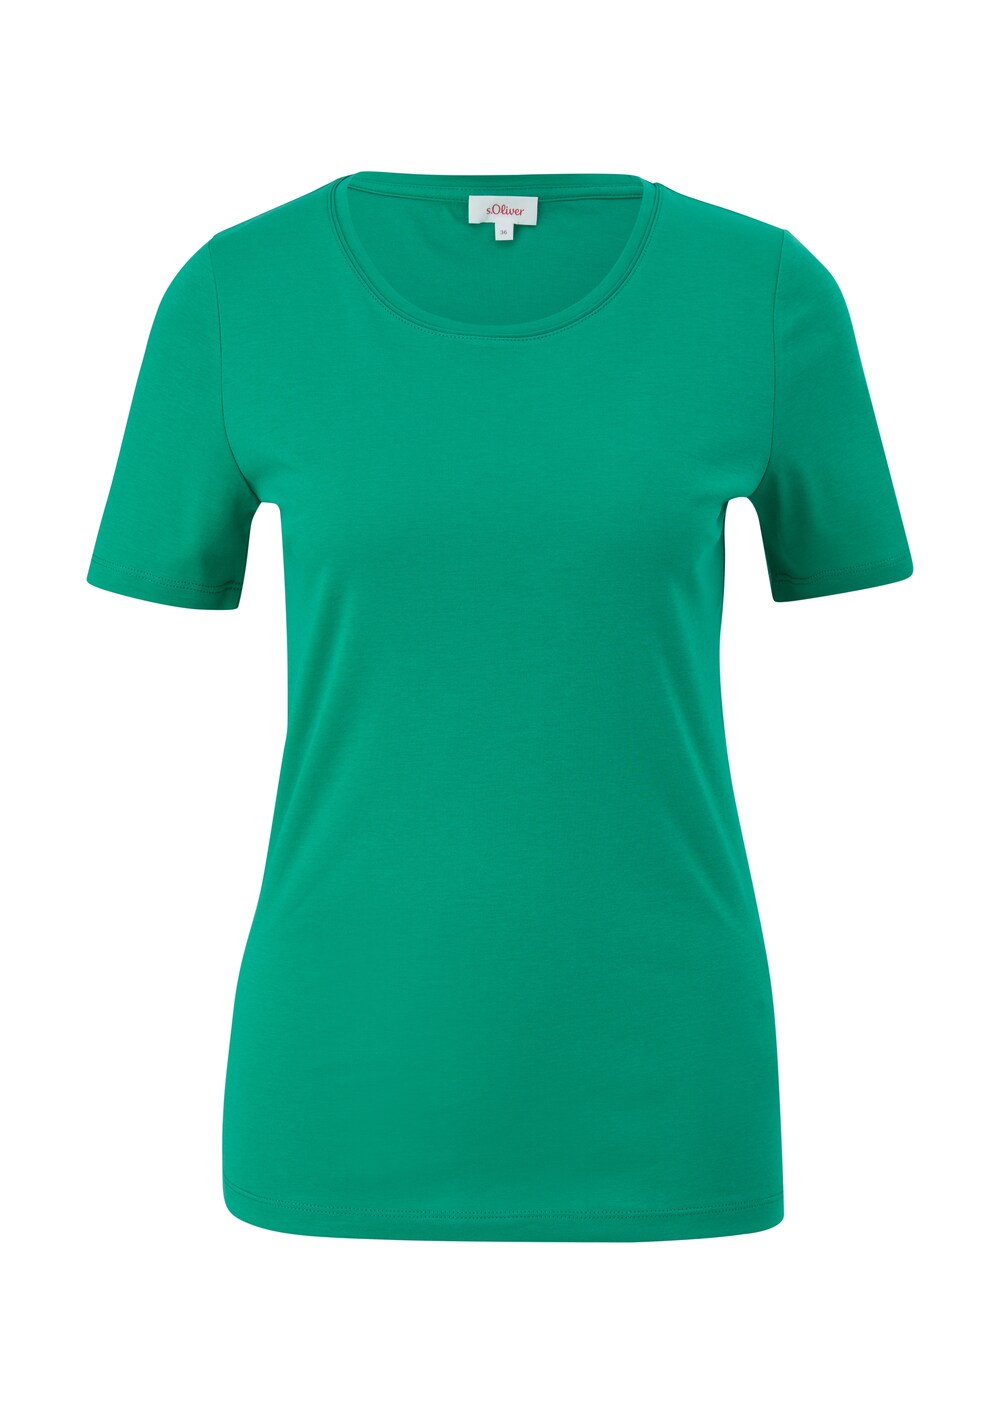 Рубашка s.Oliver, трава зеленая рубашка yoek трава зеленая